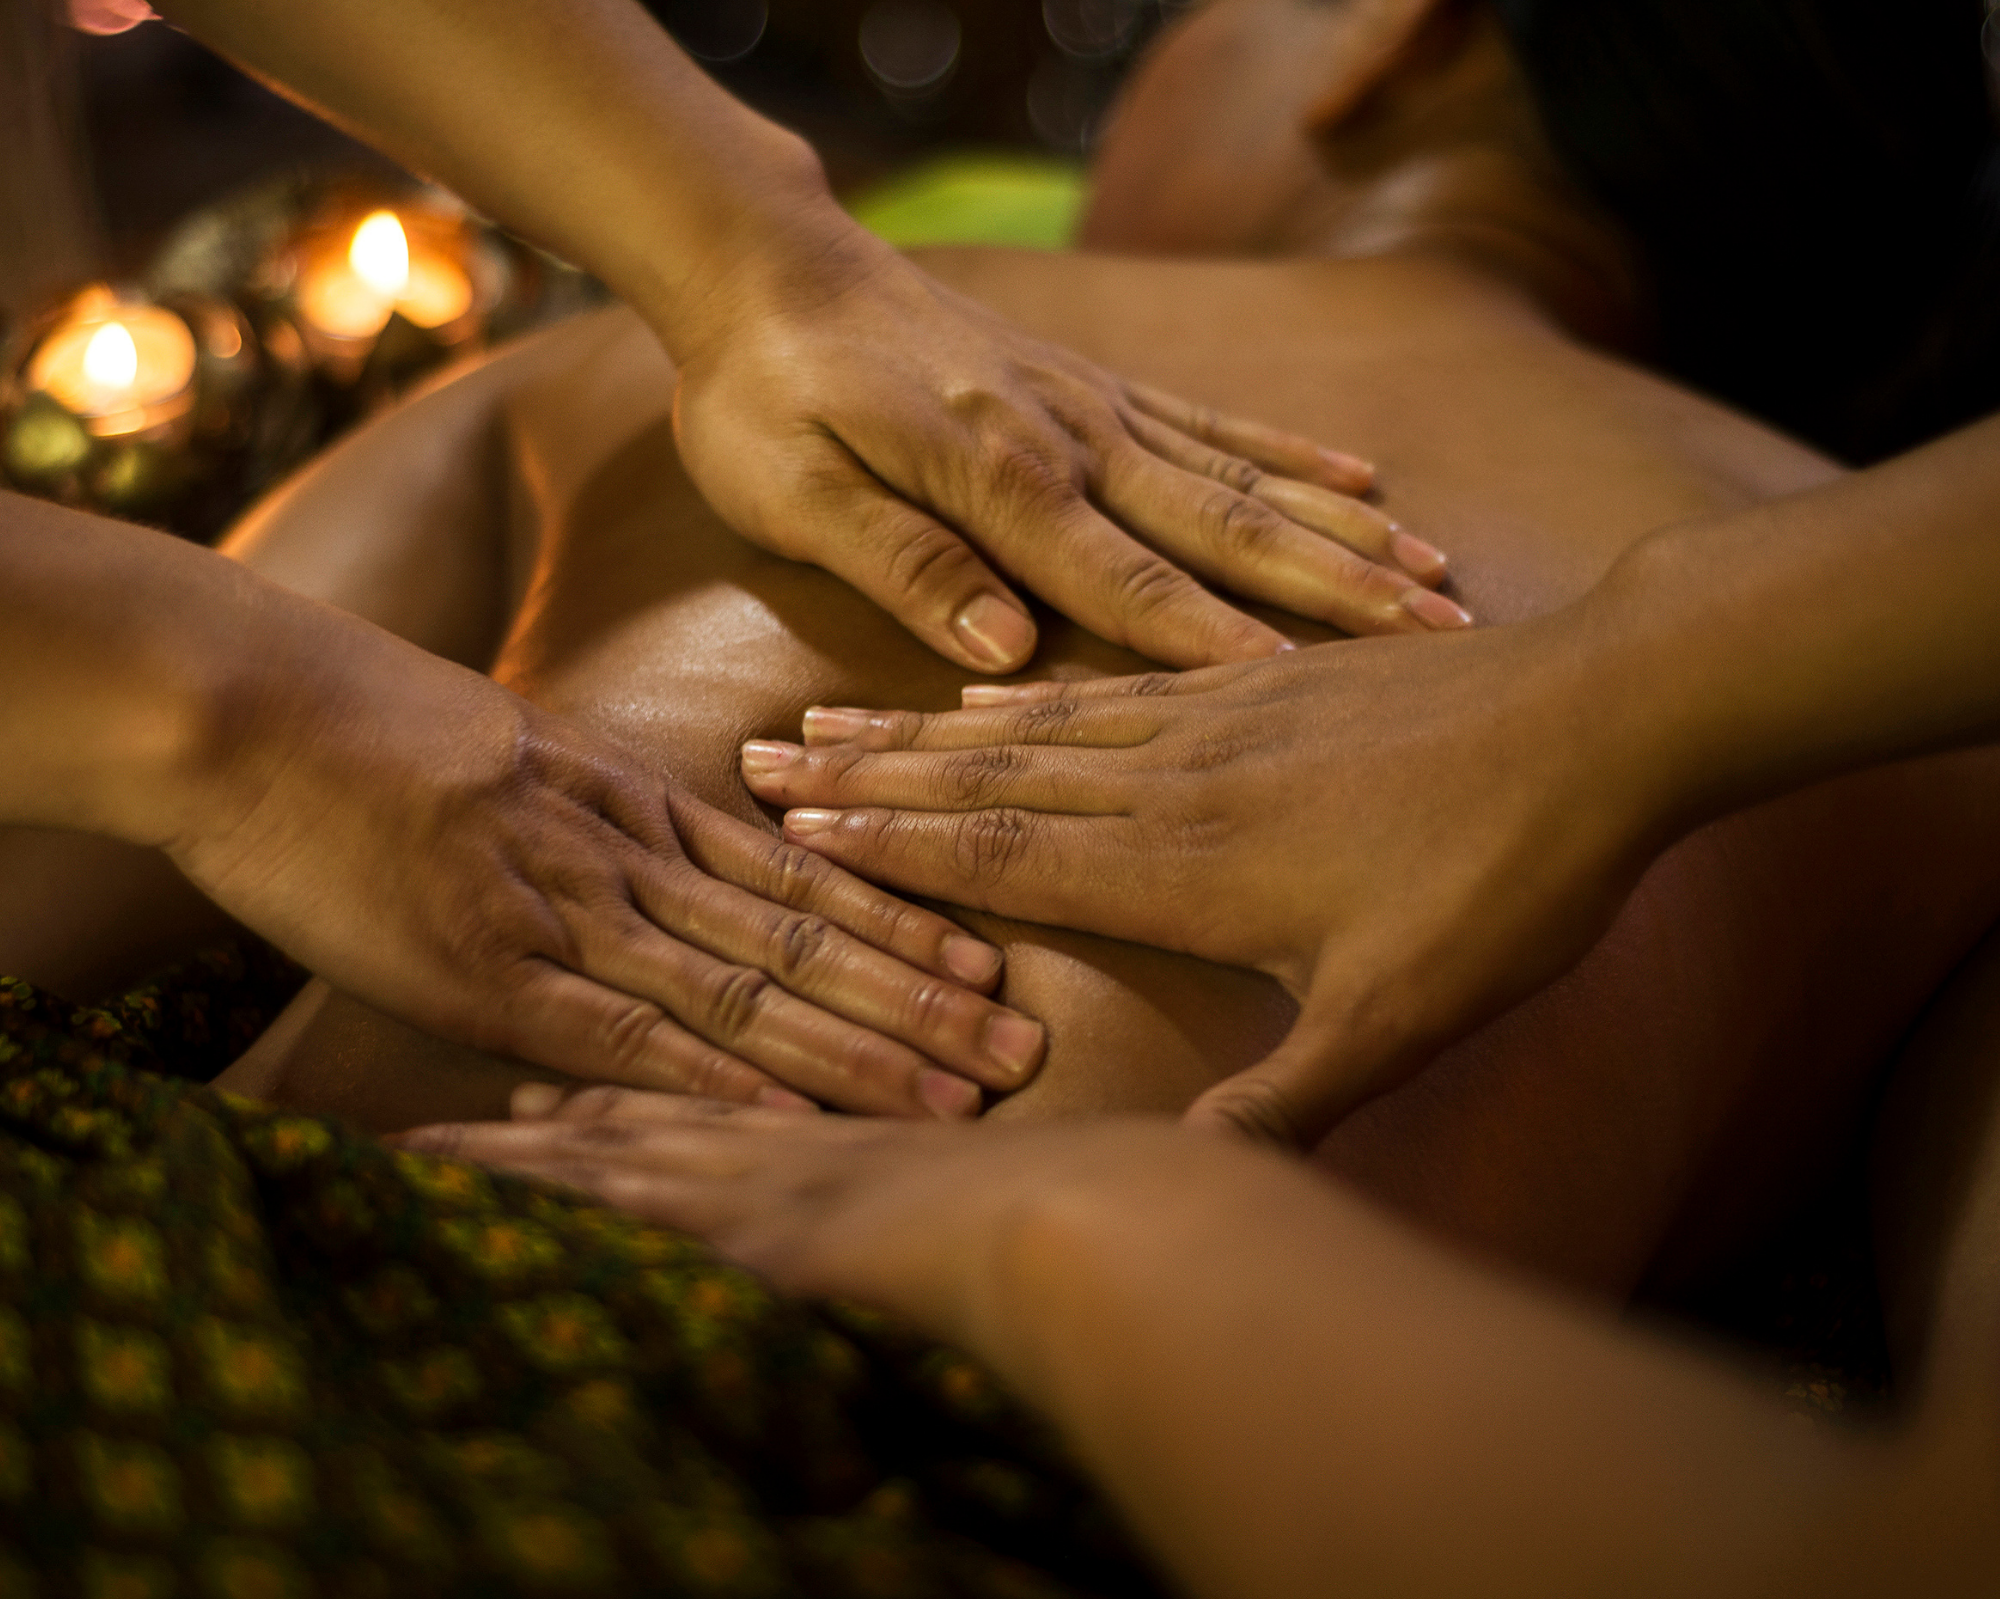 Королевский тайский массаж в 4 руки. Массаж рук. Королевский массаж для мужчин. Балийский массаж мужчине.